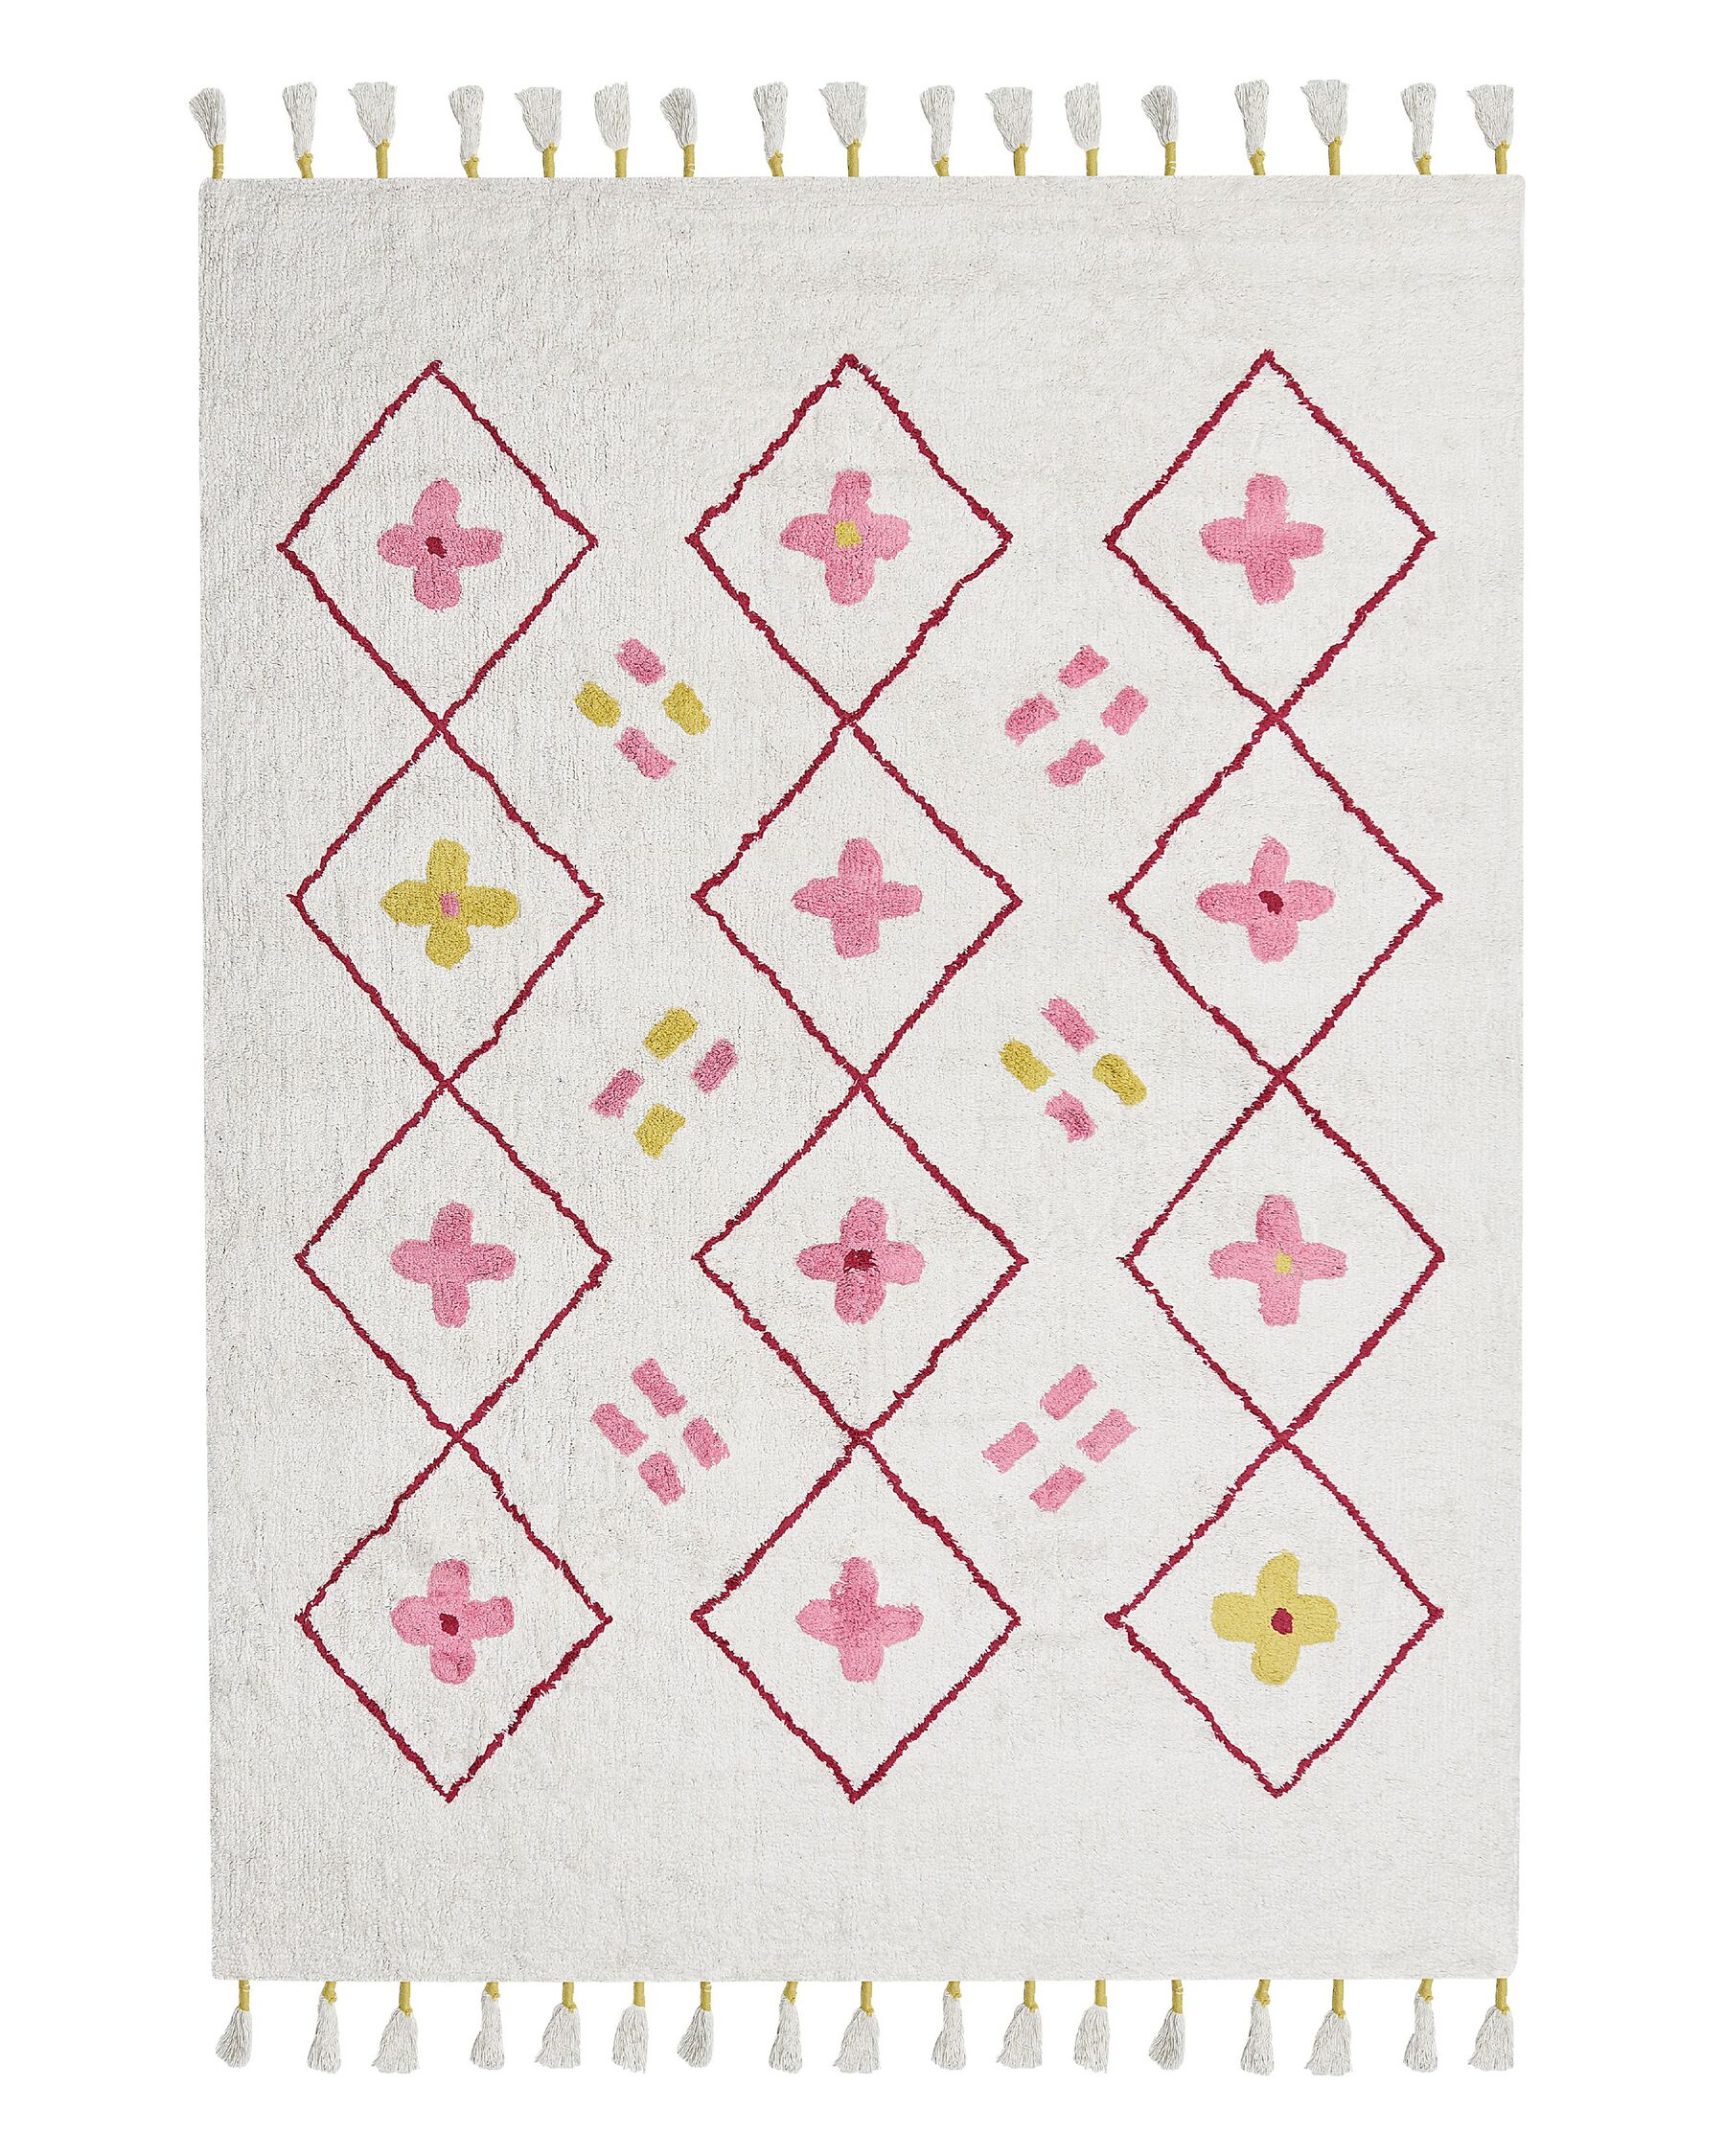 Tapis pour enfant en coton blanc et rose 160 x 230 cm CAVUS_839828